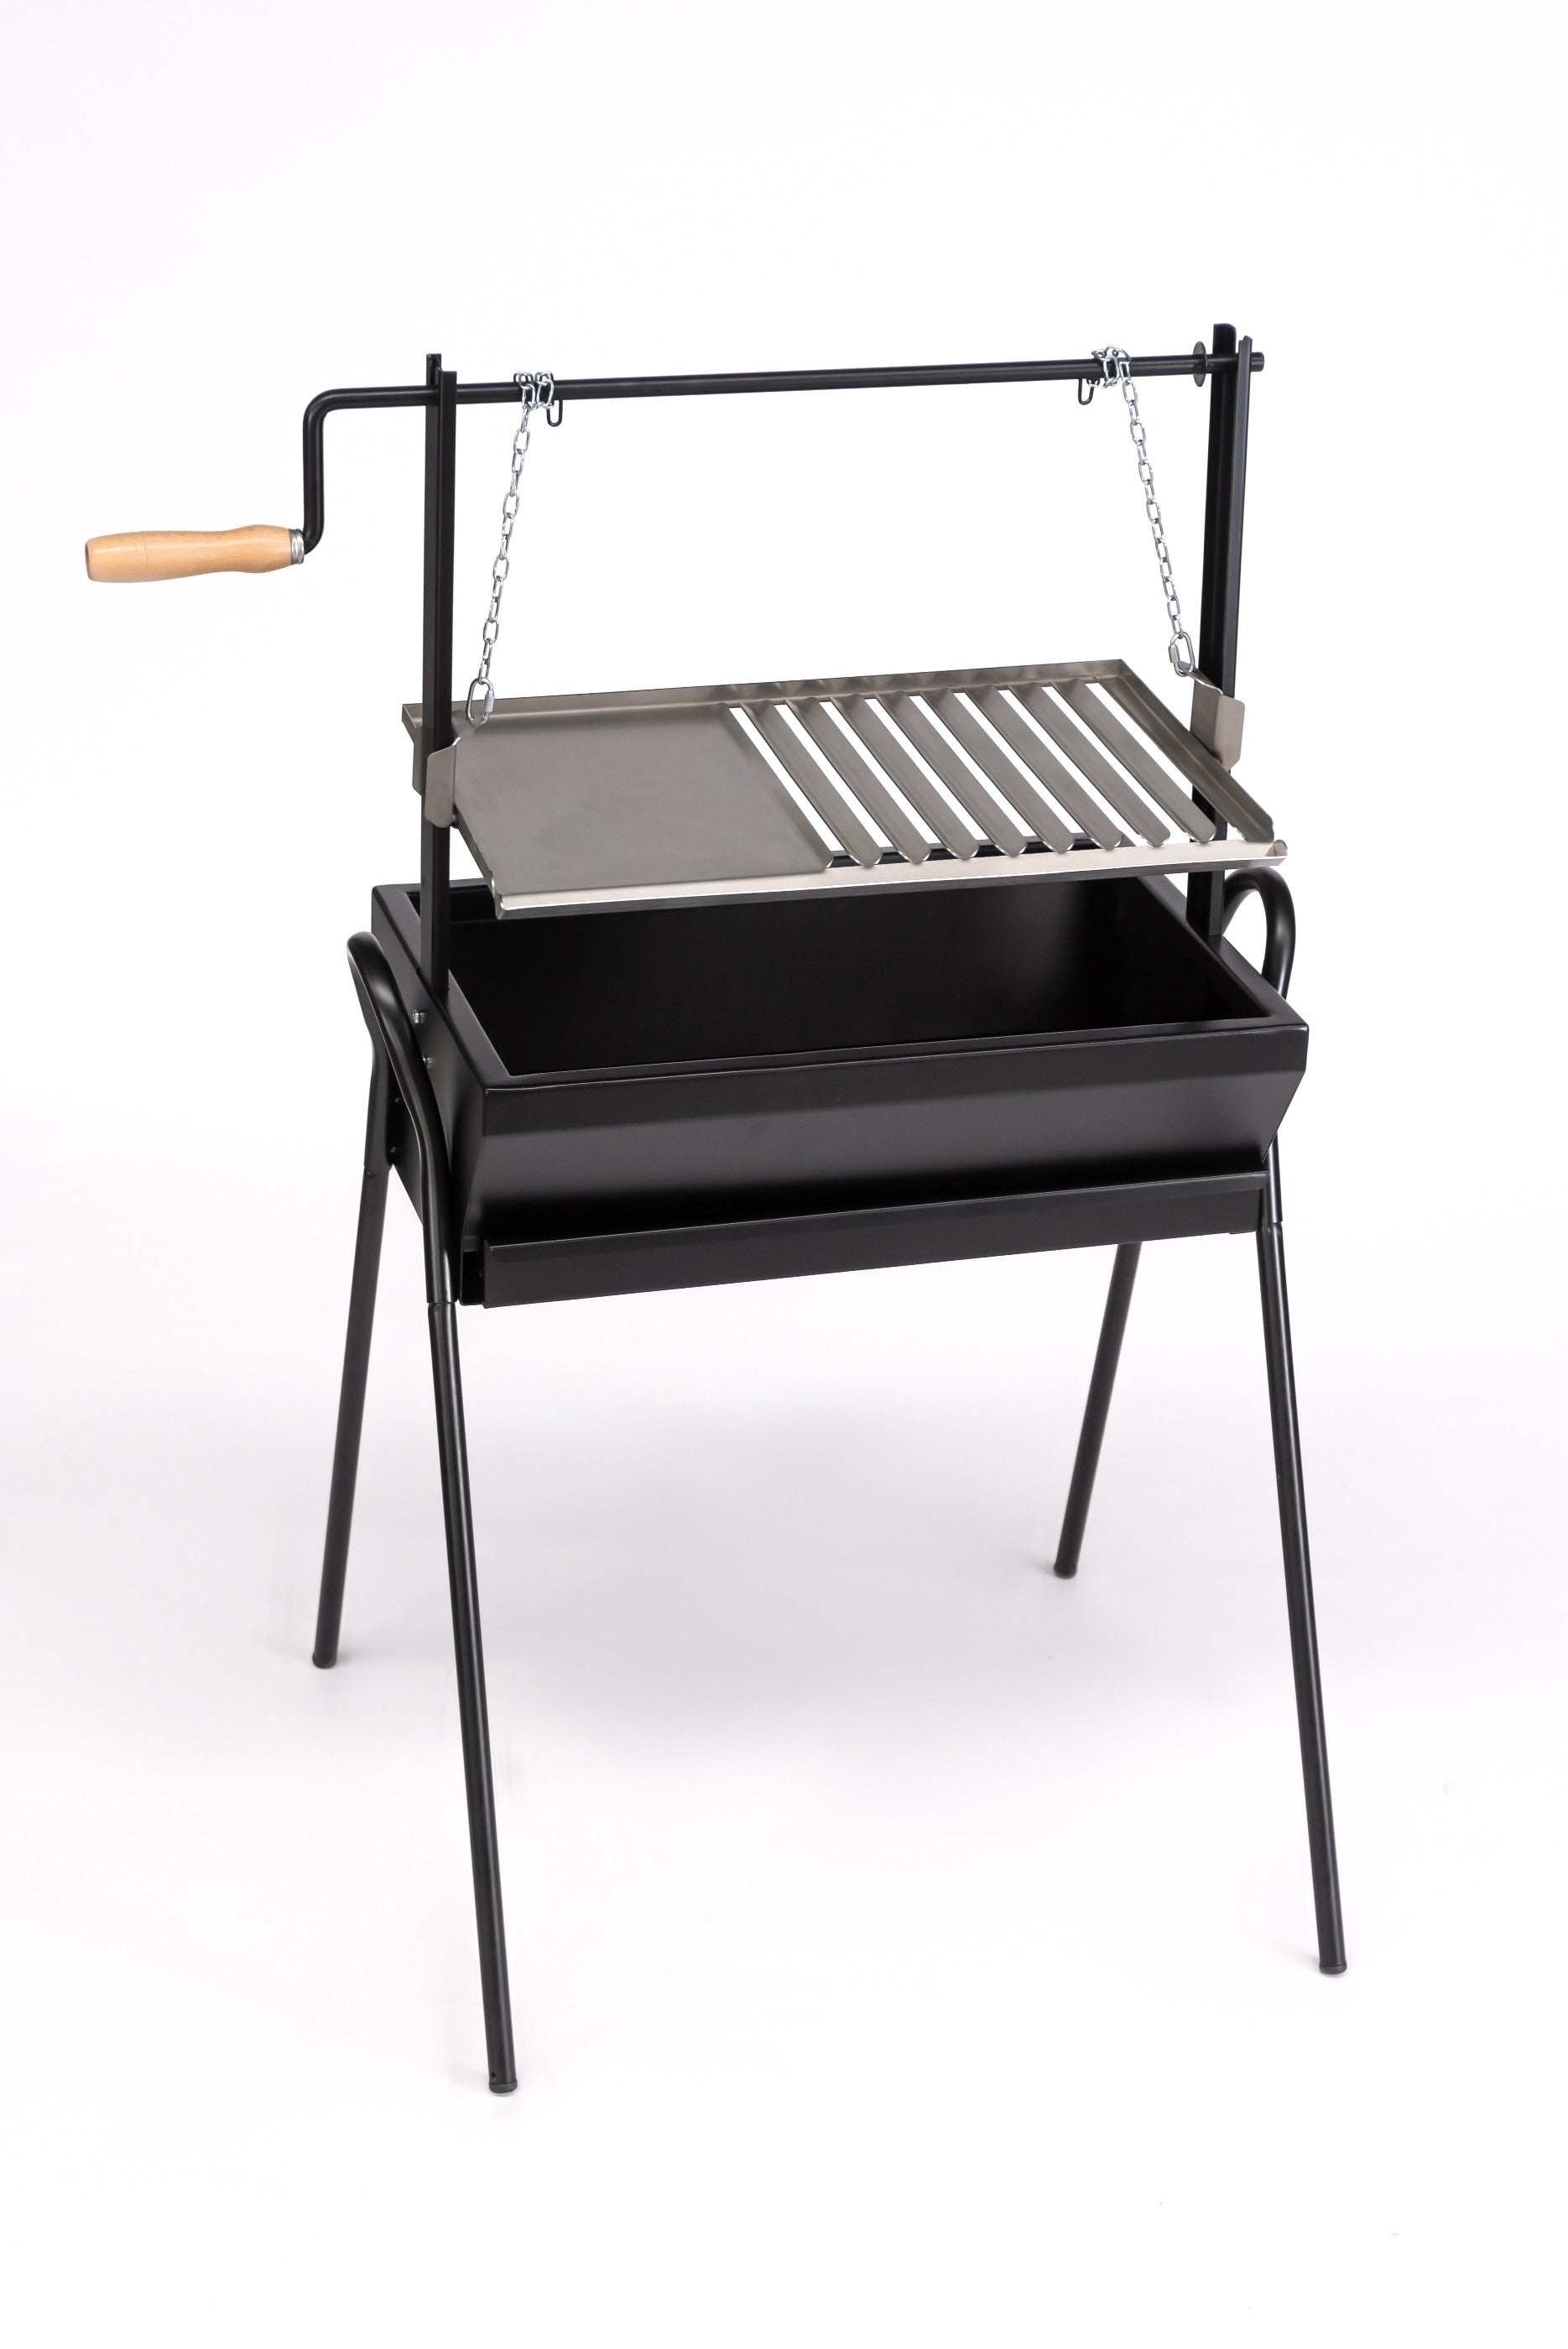 Barbecue / Argentinischer Grill 70cm